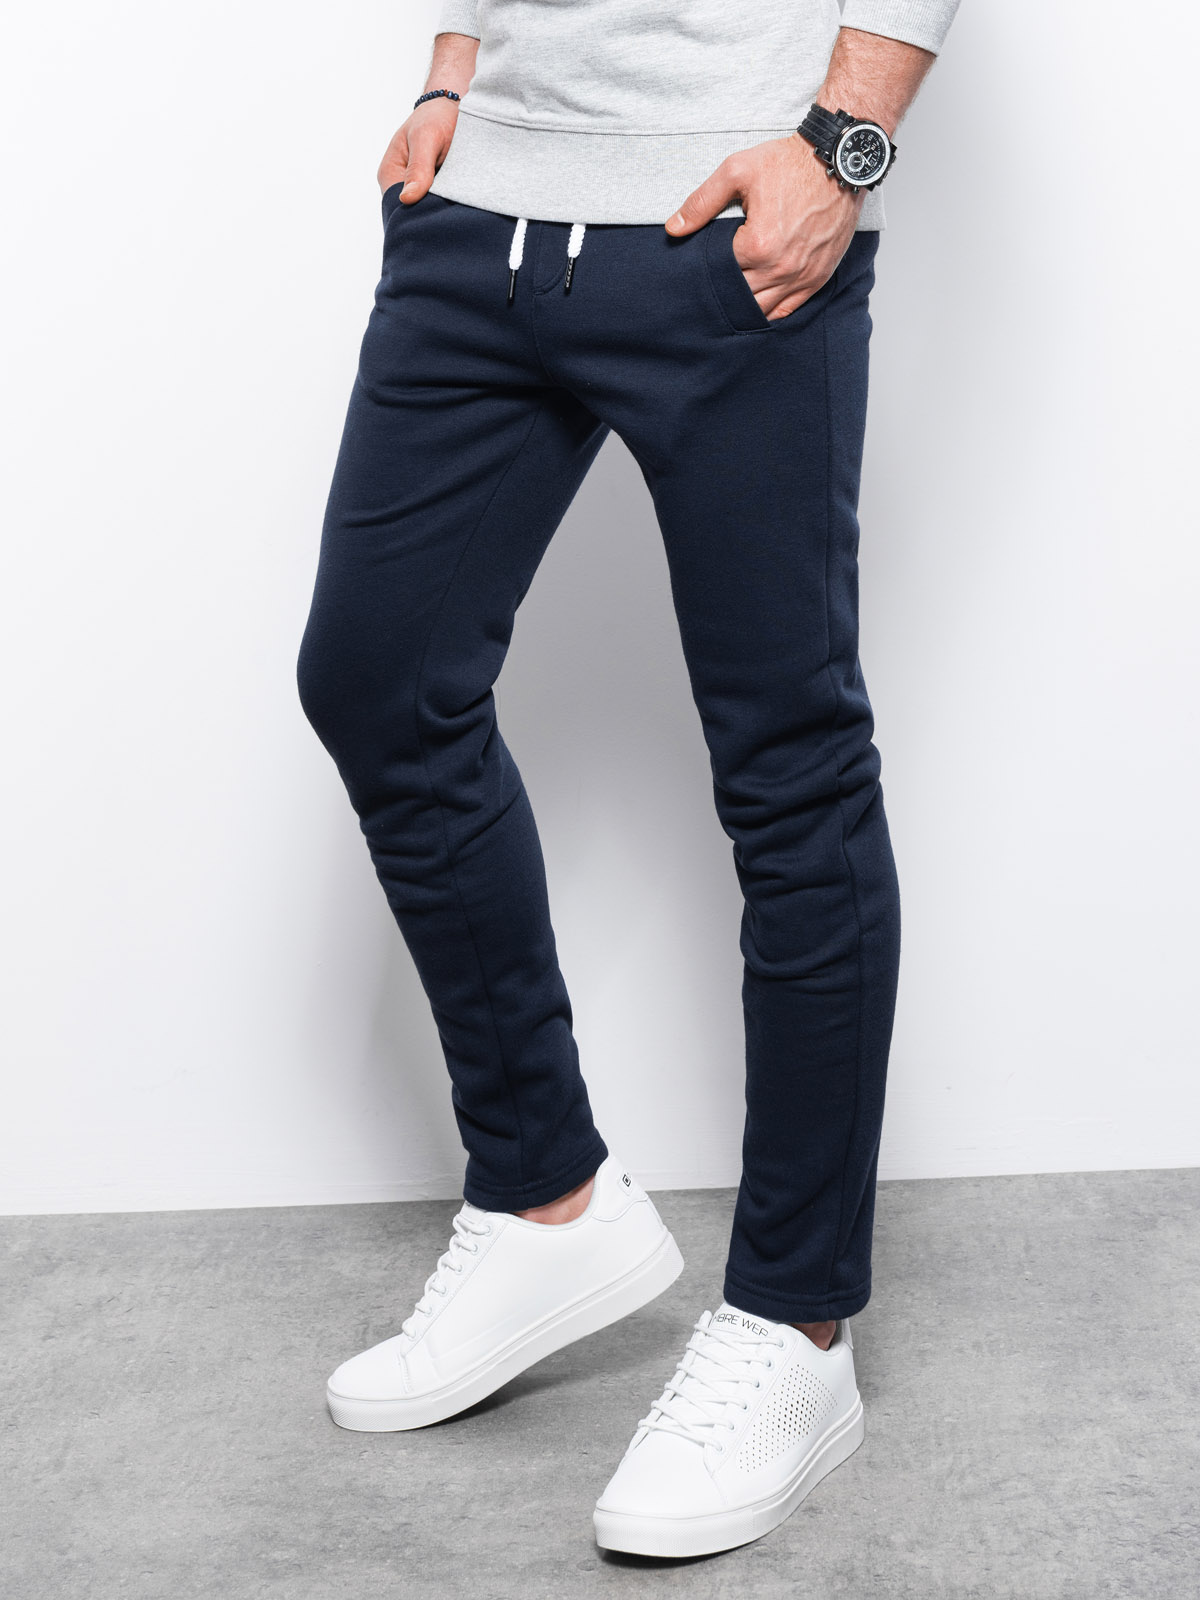 Men's sweatpants P866 - navy | MODONE wholesale - Clothing For Men